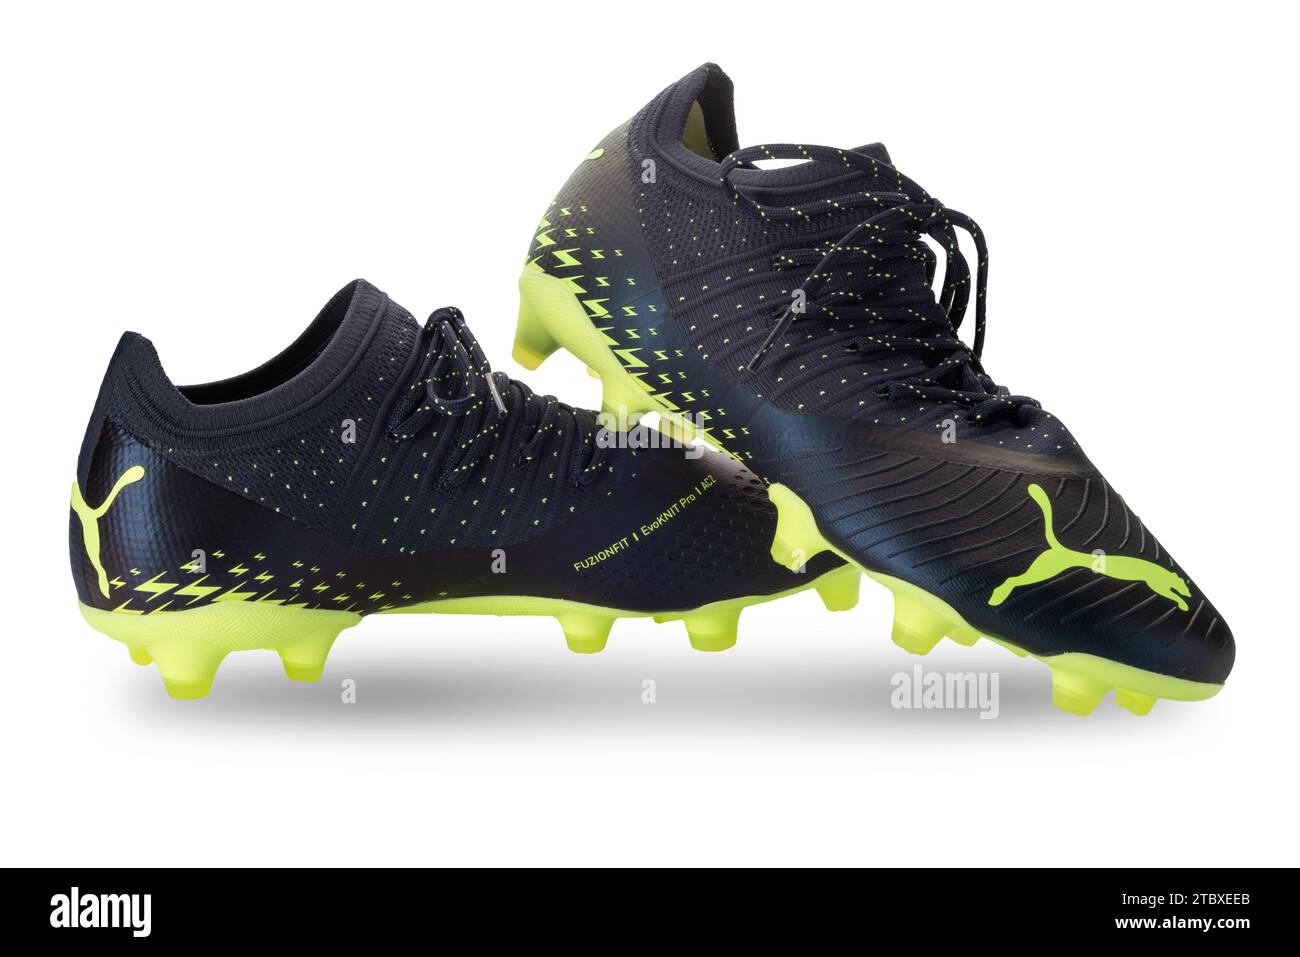 Italie - 23 juin 2023 : Chaussures de football PUMA future Z 2,4, chaussures de football noires avec logo couleur pistache Puma, isolé sur blanc avec chemin de détourage Banque D'Images